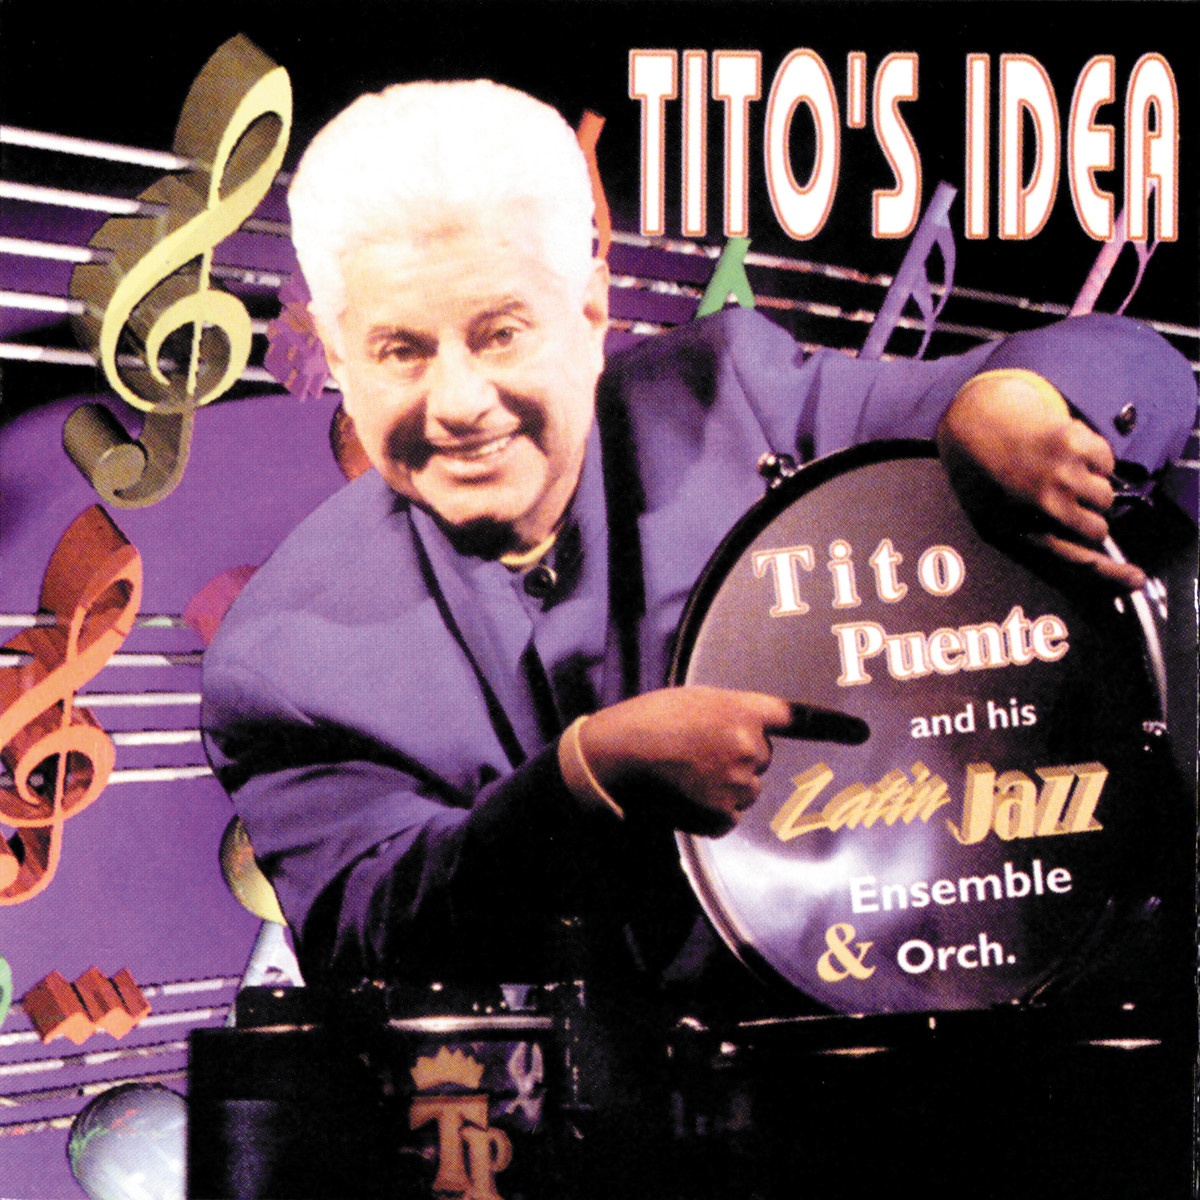 Tito's Idea (Album Version)